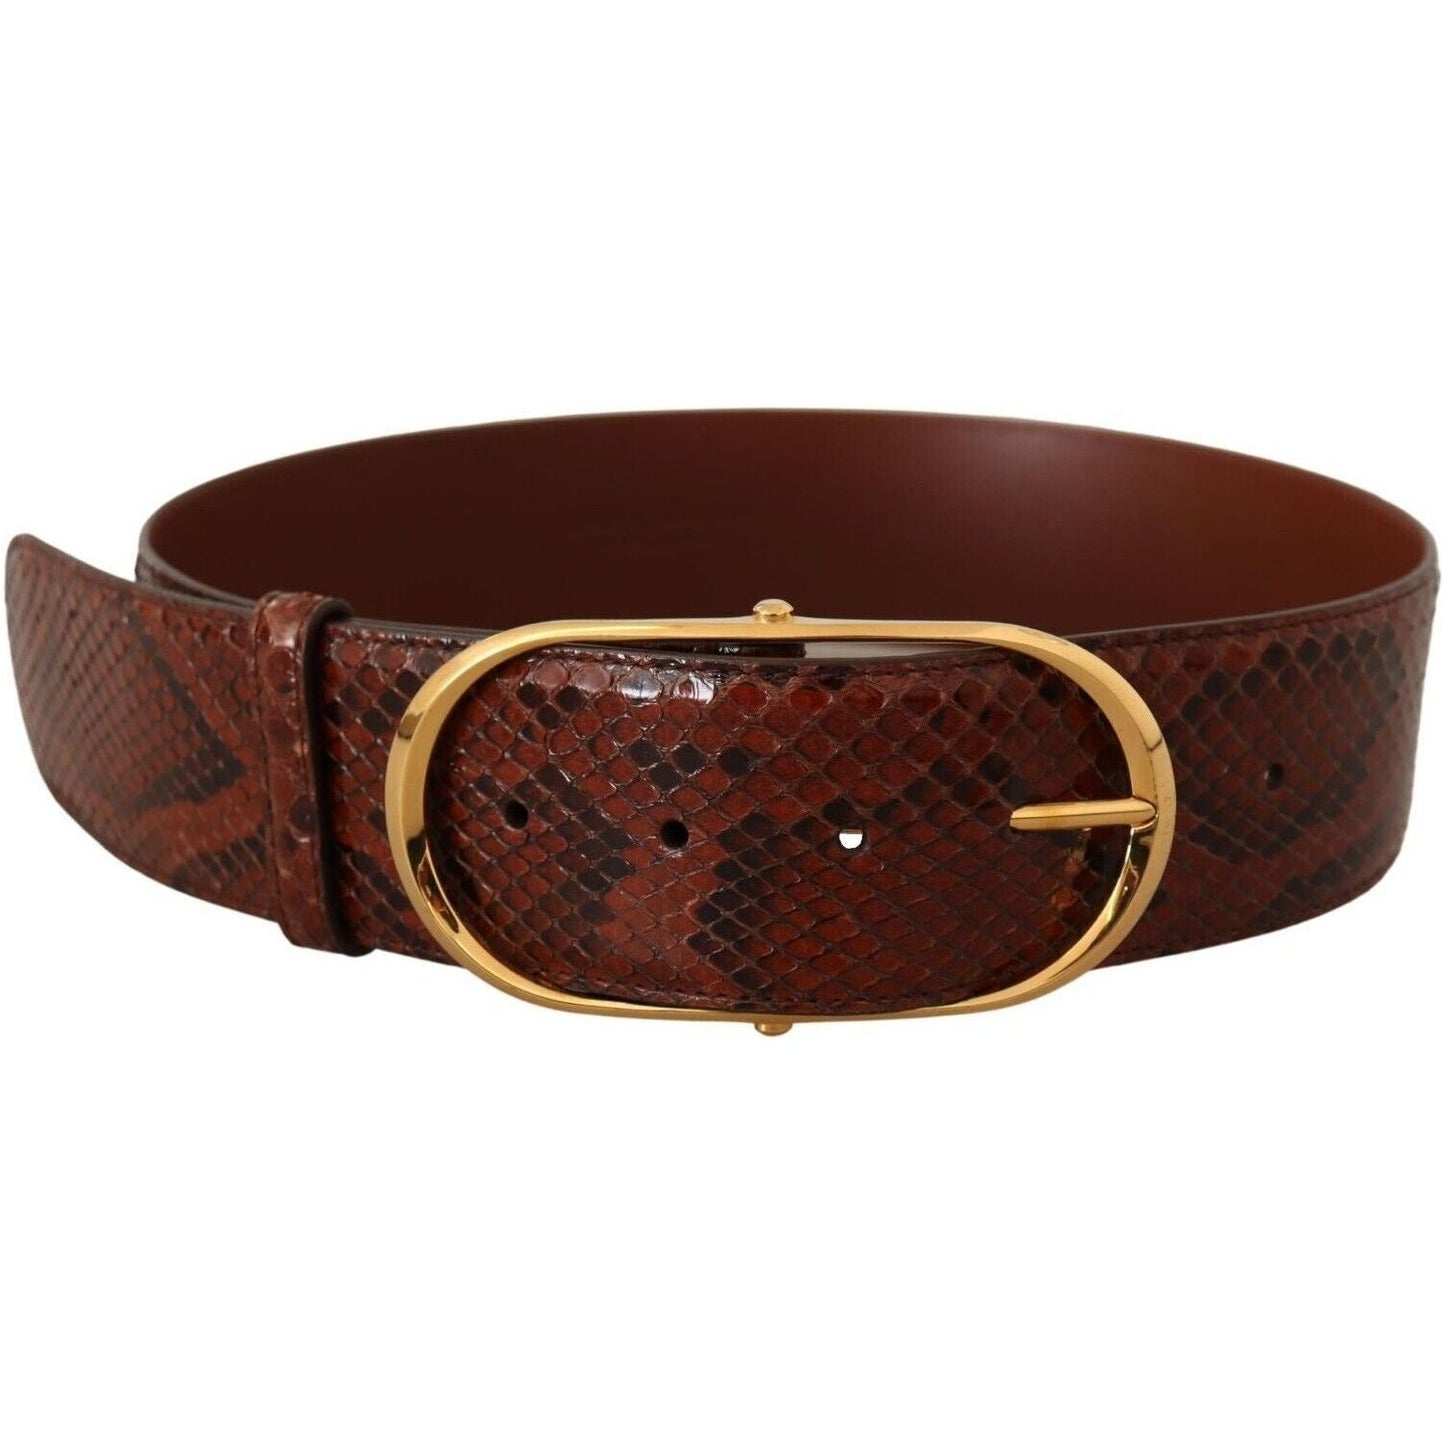 Dolce & Gabbana Elegant Python Snake Skin Leather Belt brown-exotic-leather-gold-oval-buckle-belt-6 WOMAN BELTS